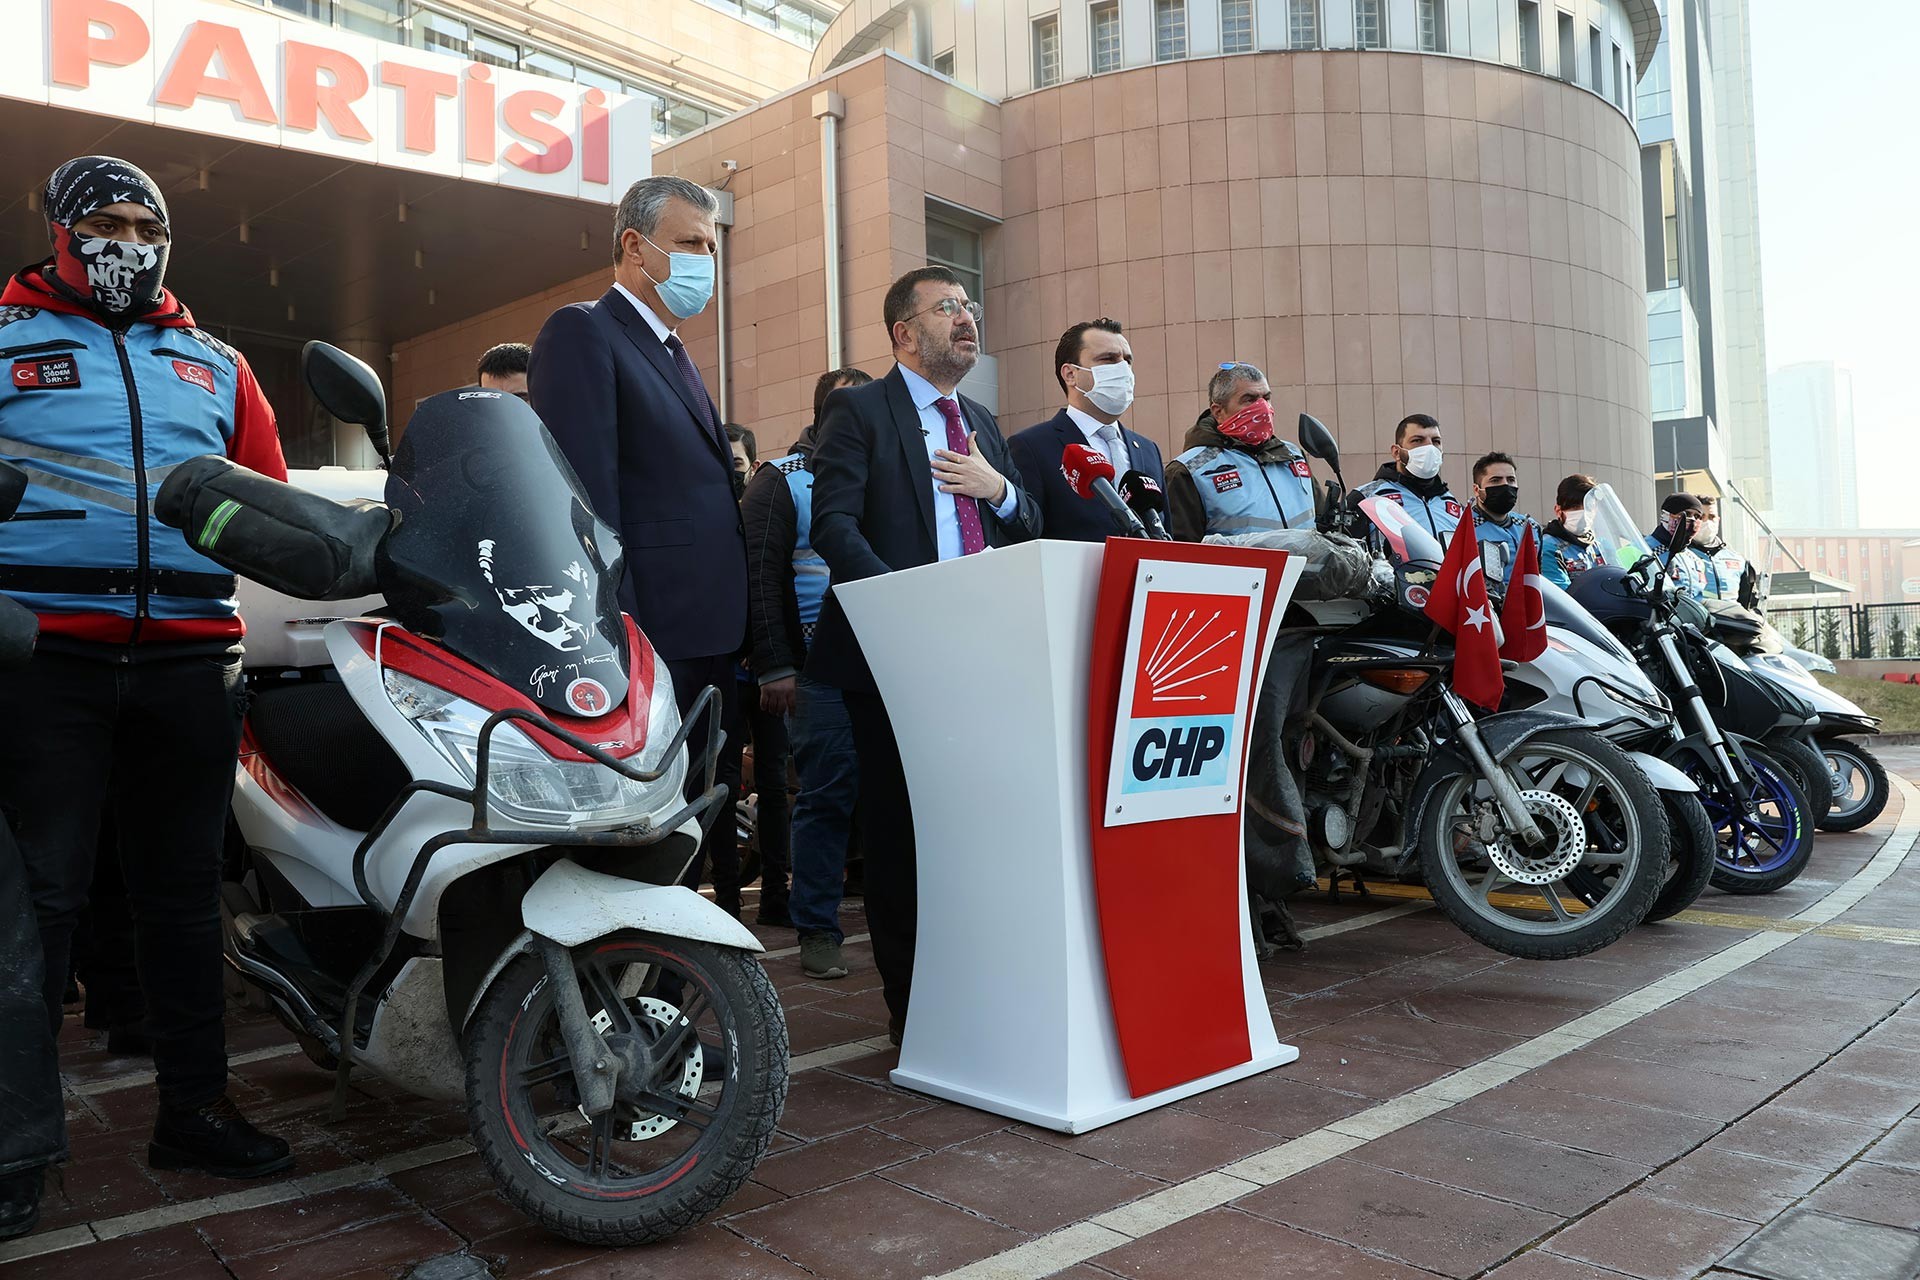 CHP’li Veli Ağbaba beraberinde Adana Milletvekili Ayhan Barut ve Manisa Milletvekili Bekir Başevirgen, Federasyon başkanı Çağdaş Yavuz ve motokuryeler ile birlikte CHP Genel Merkezi önünde.